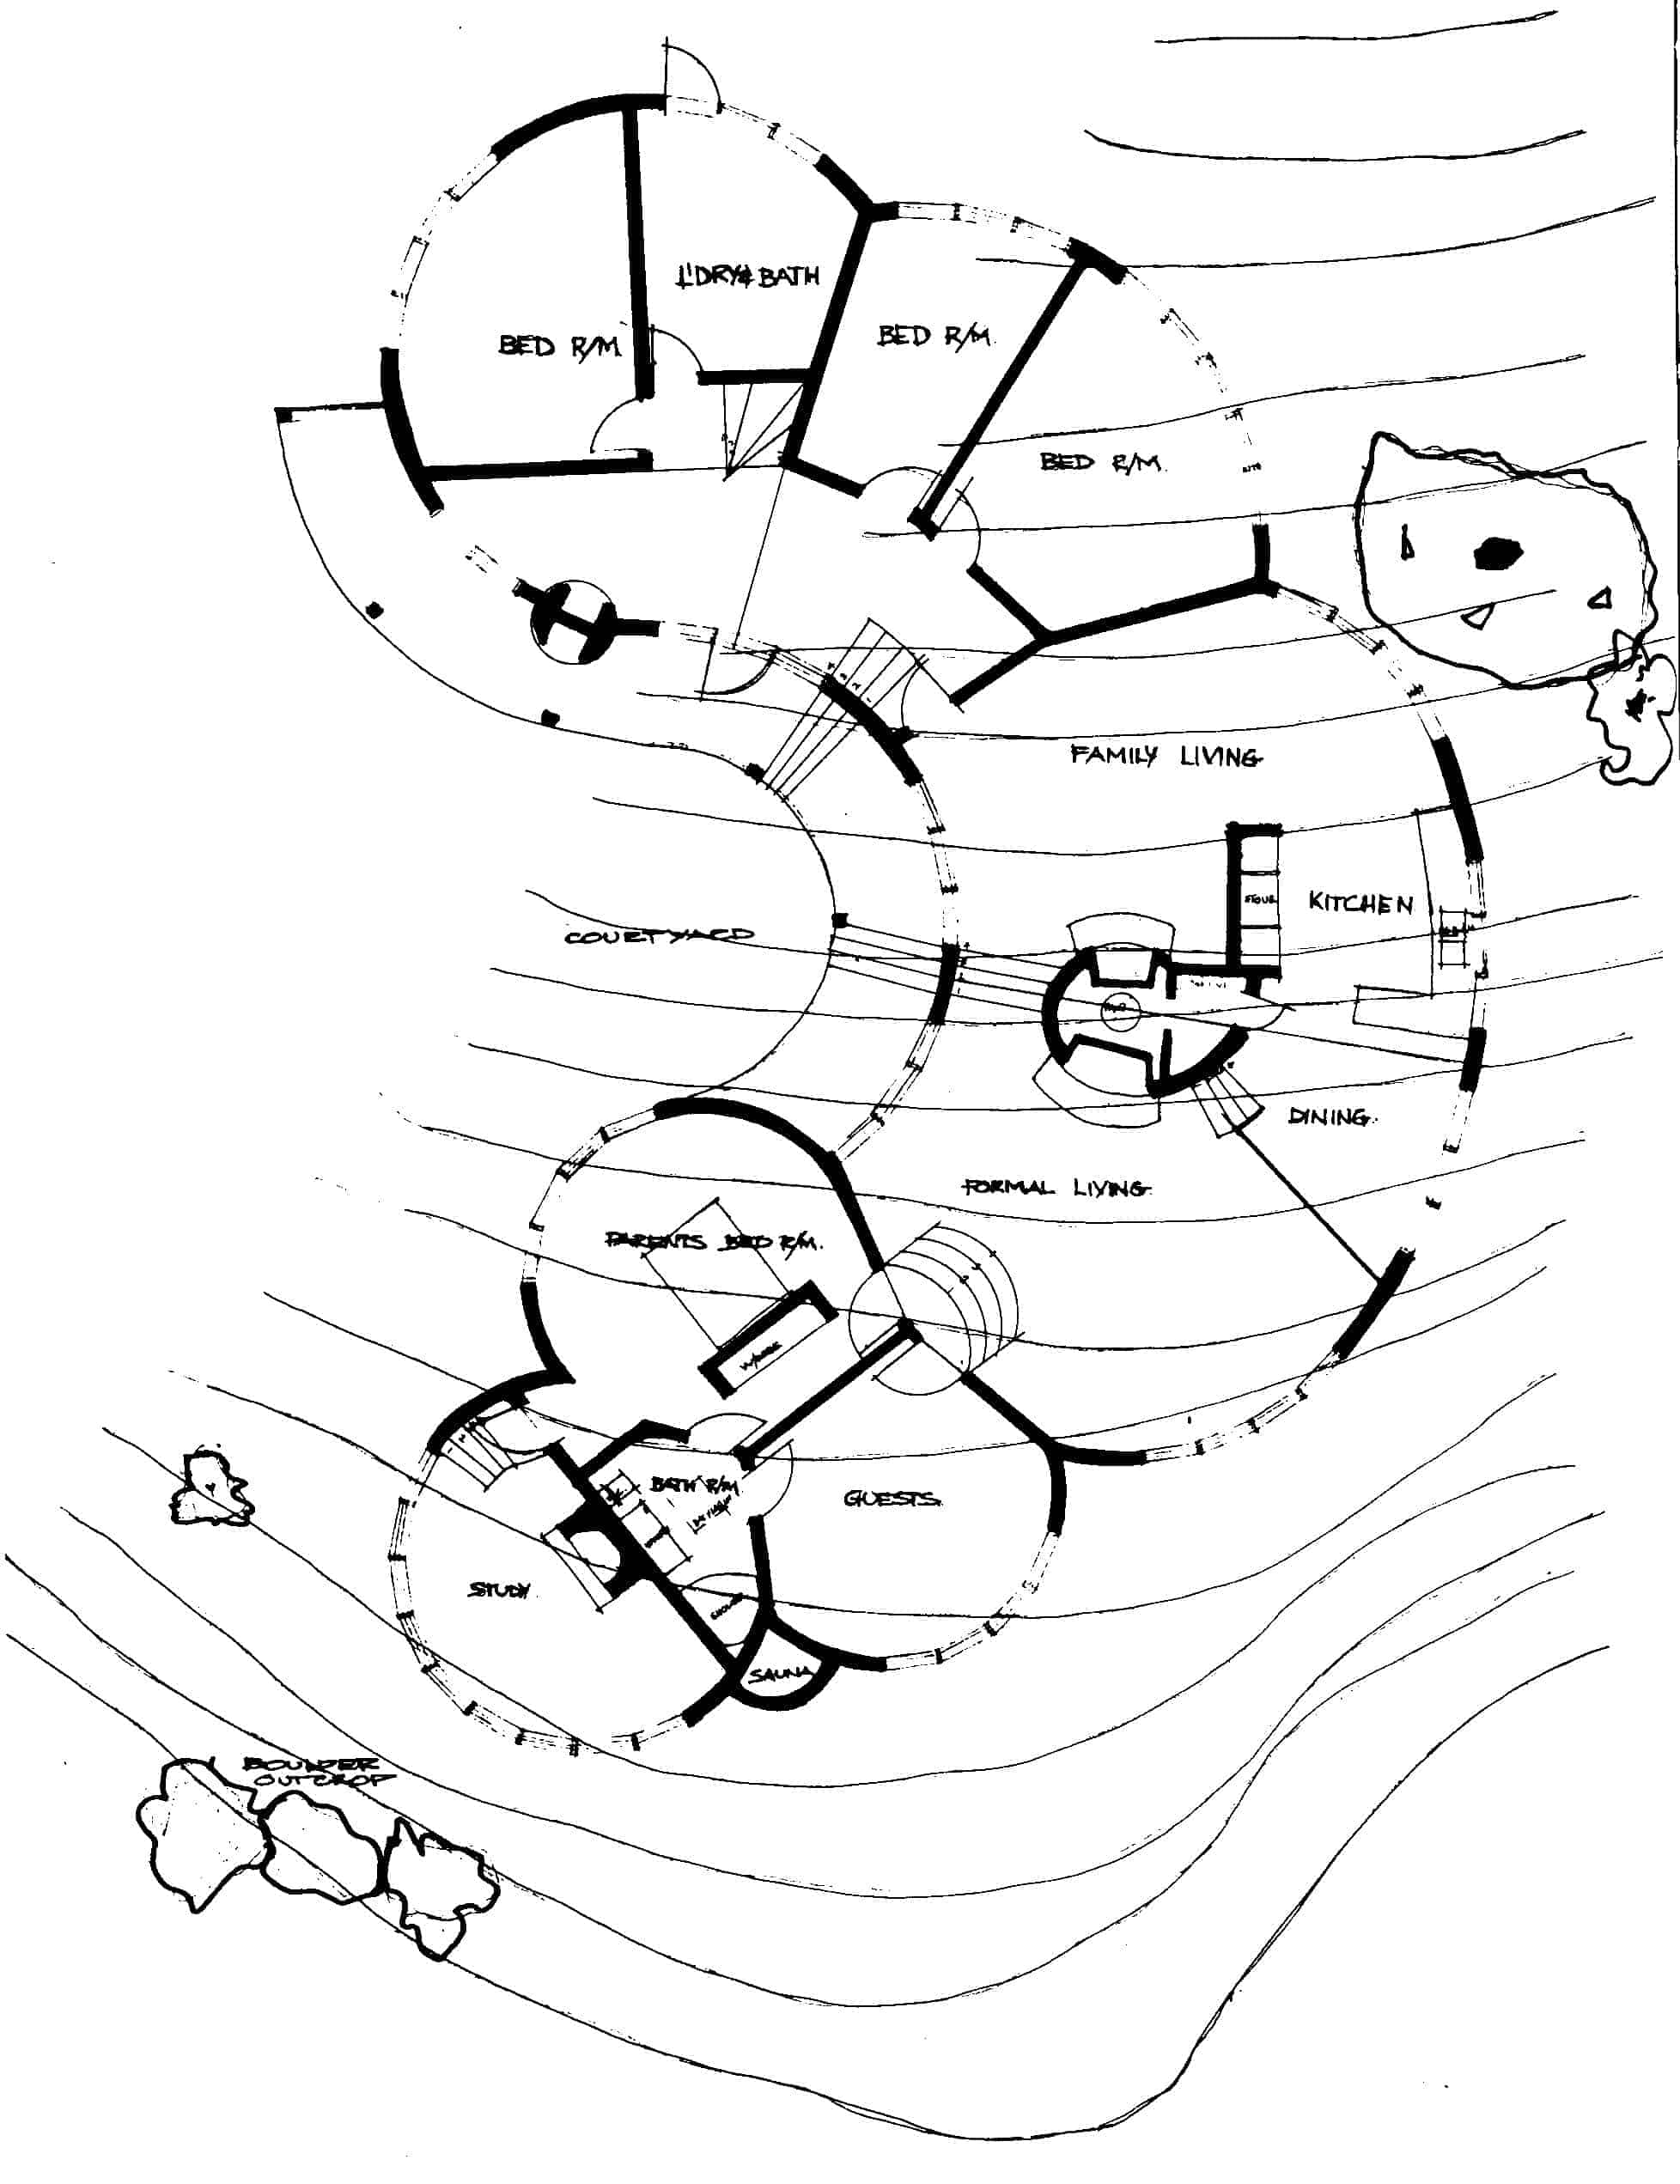 Original sketch plan of the Nicholas House Canberra 1973